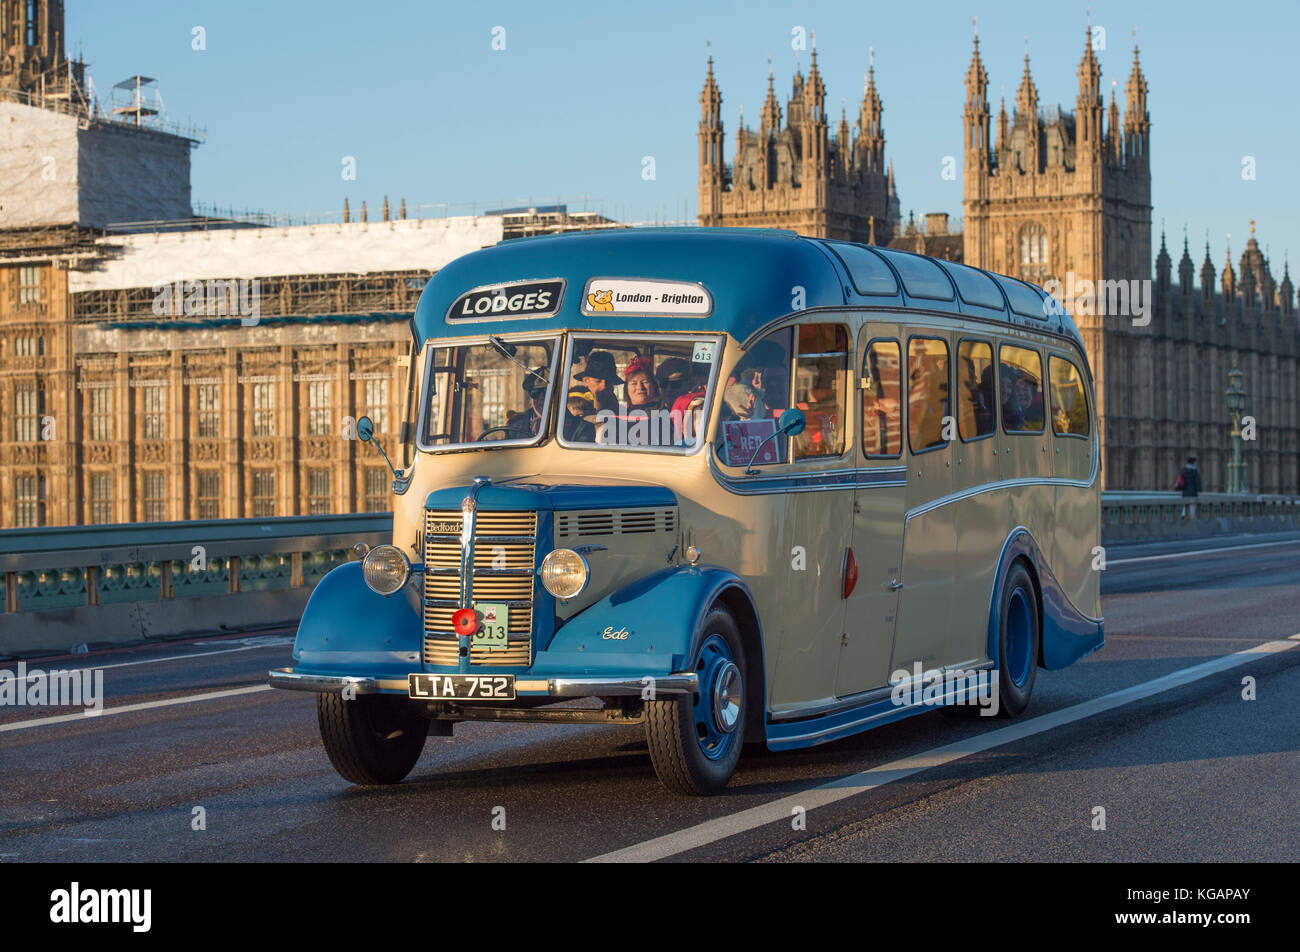 5 novembre 2017. Bonhams de Londres à Brighton, le plus long événement automobile au monde, traverse le pont de Westminster. Banque D'Images